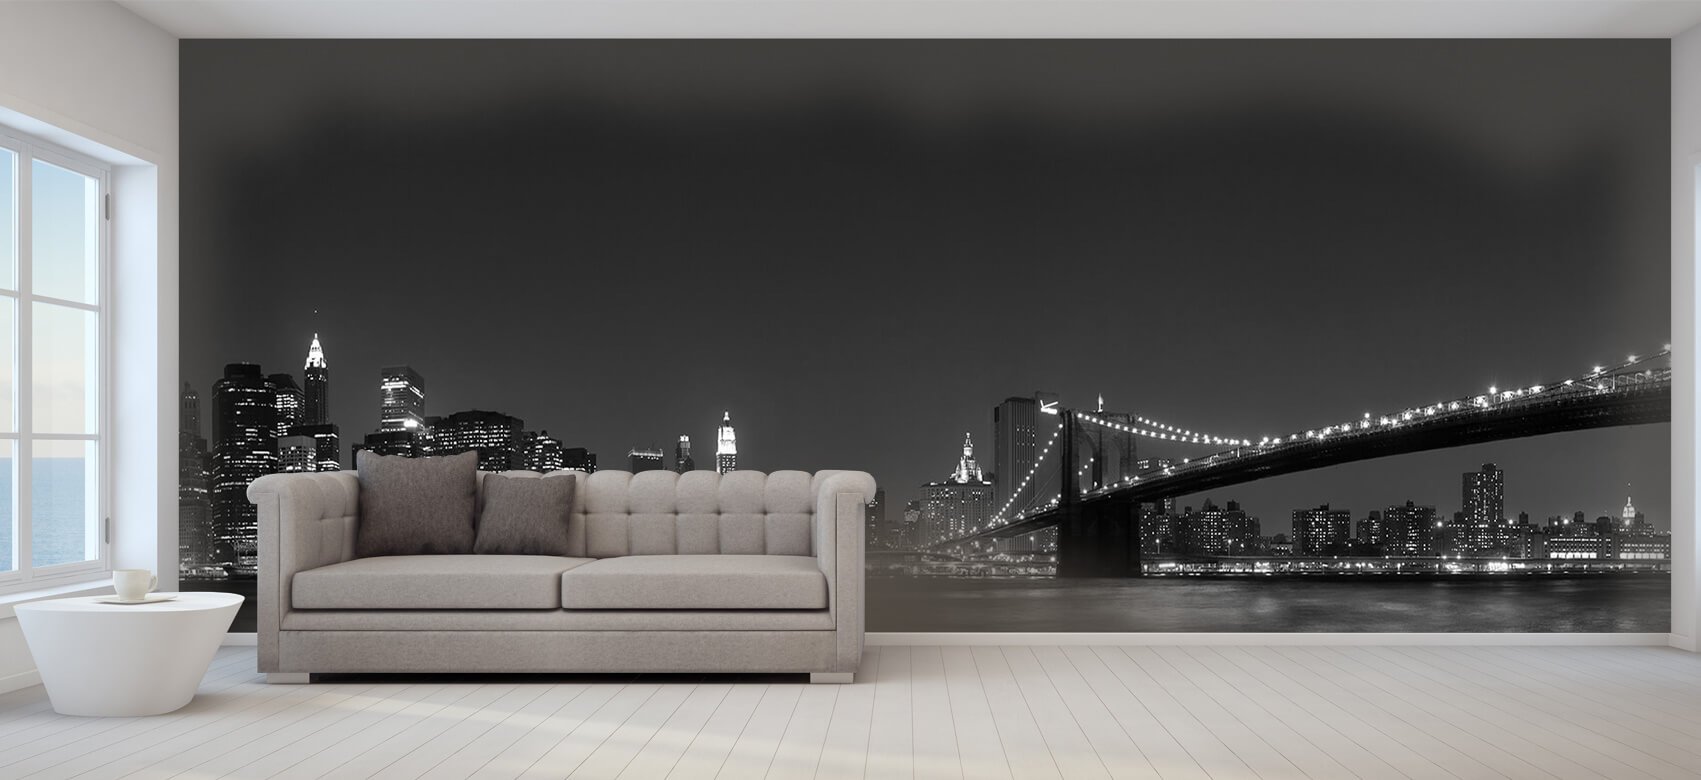 Nacht Papel pintado con El horizonte de Manhattan y el puente de Brooklyn - Habitación de adolescentes 9